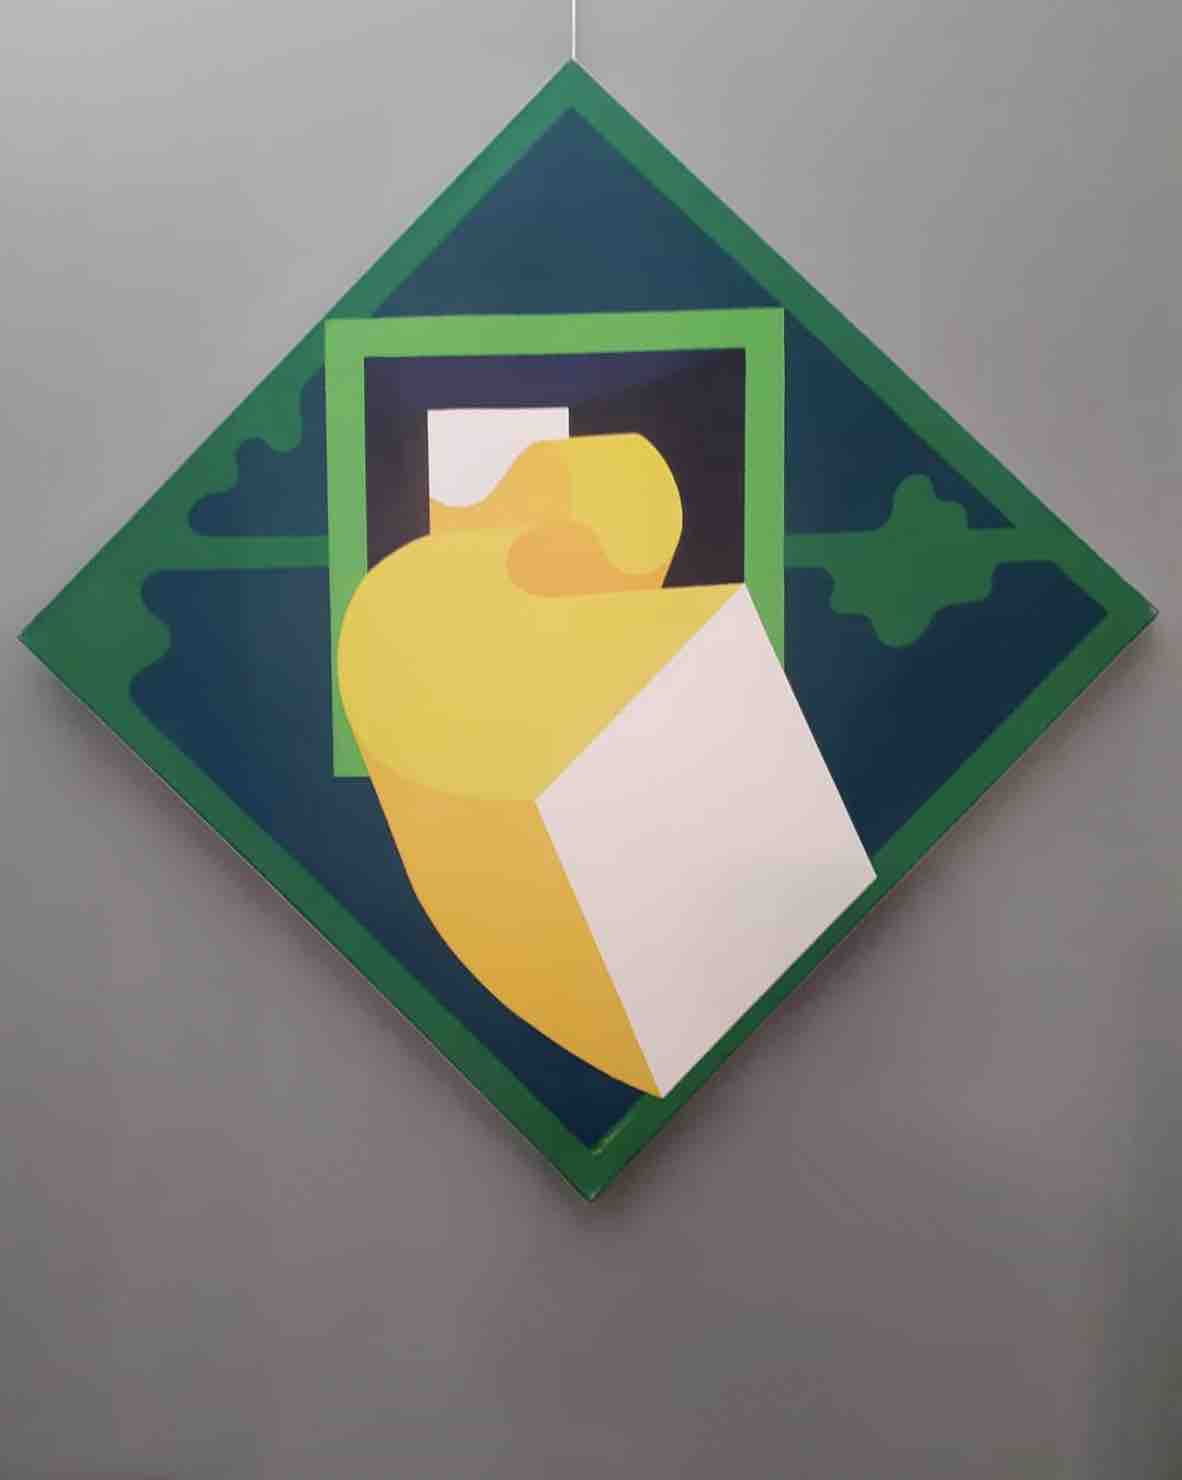 Tableau carré sous forme de losange, avec des formes géométriques et des couleurs vives